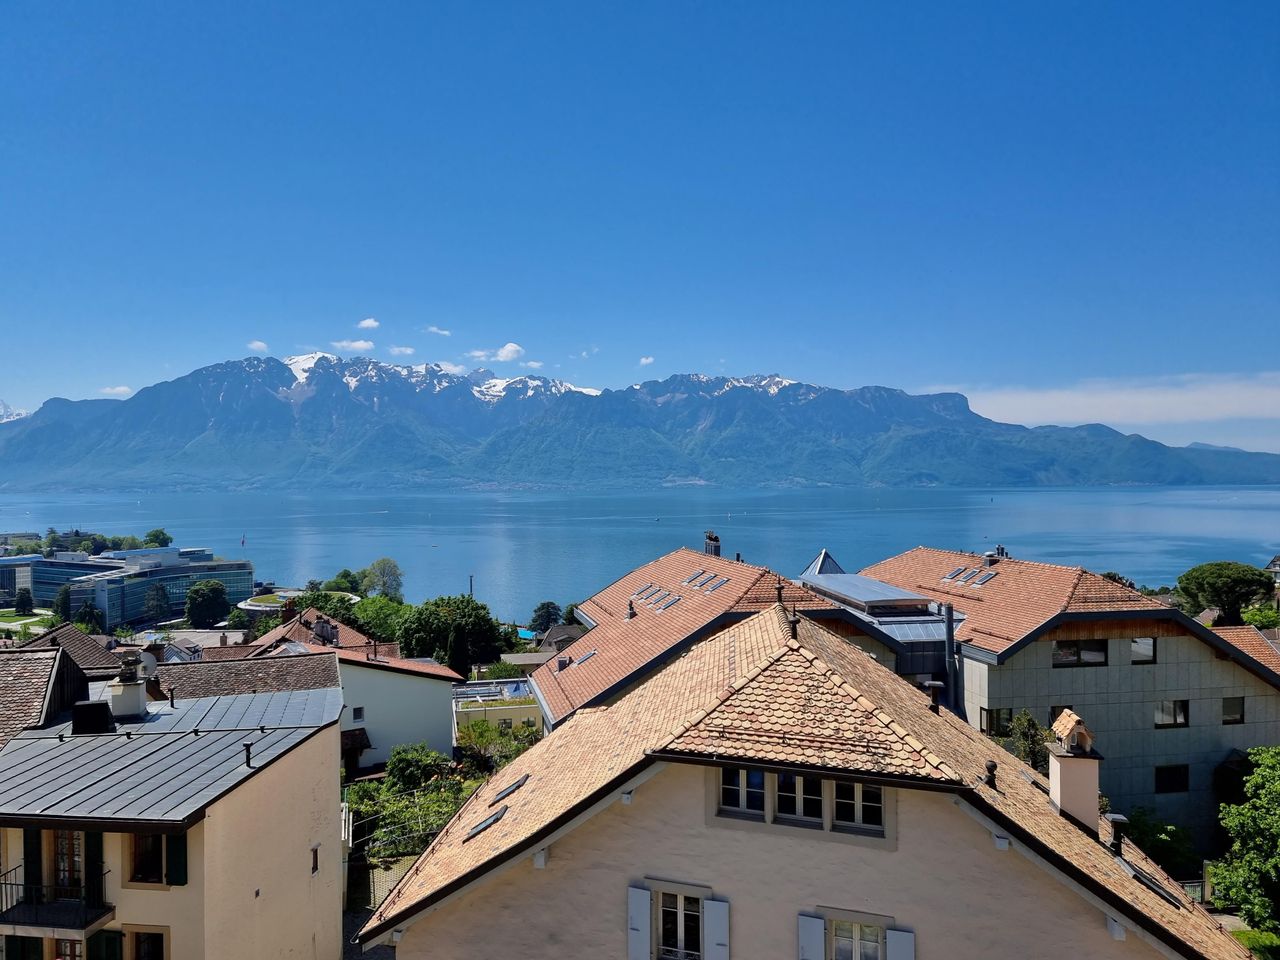 9 Tage Wein und Kulinarik am Genfer See